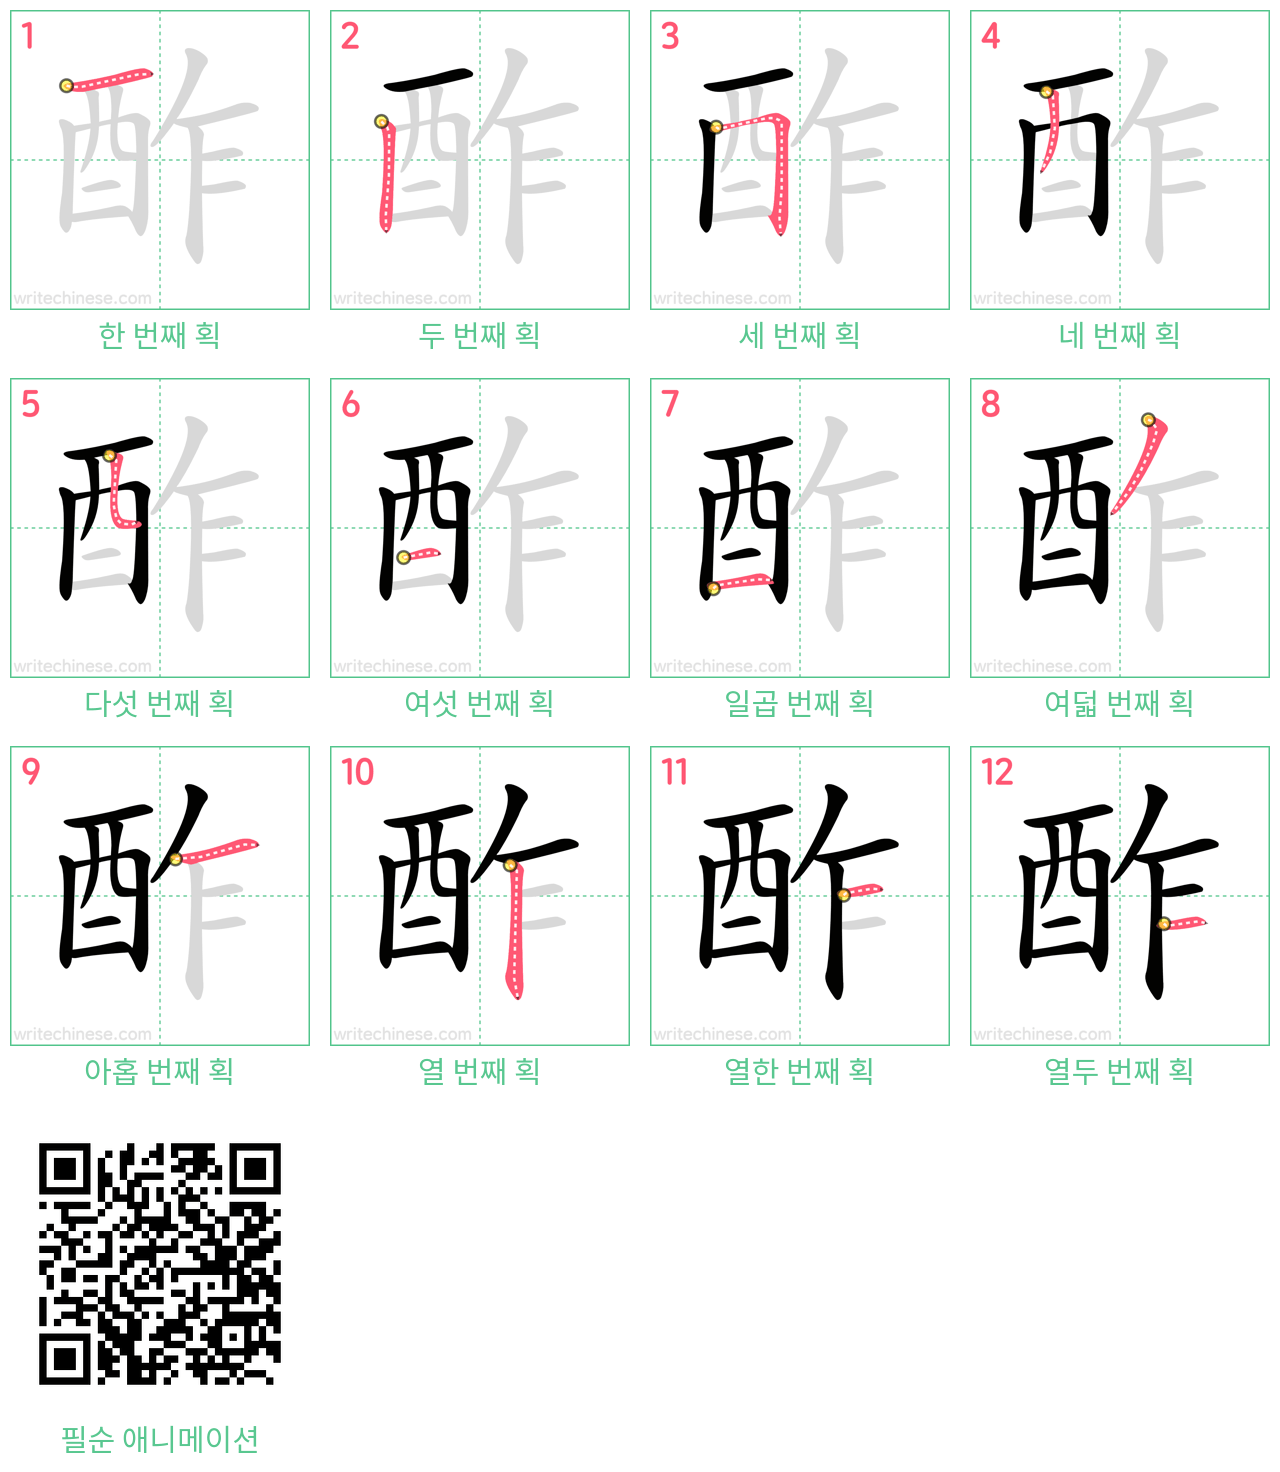 酢 step-by-step stroke order diagrams